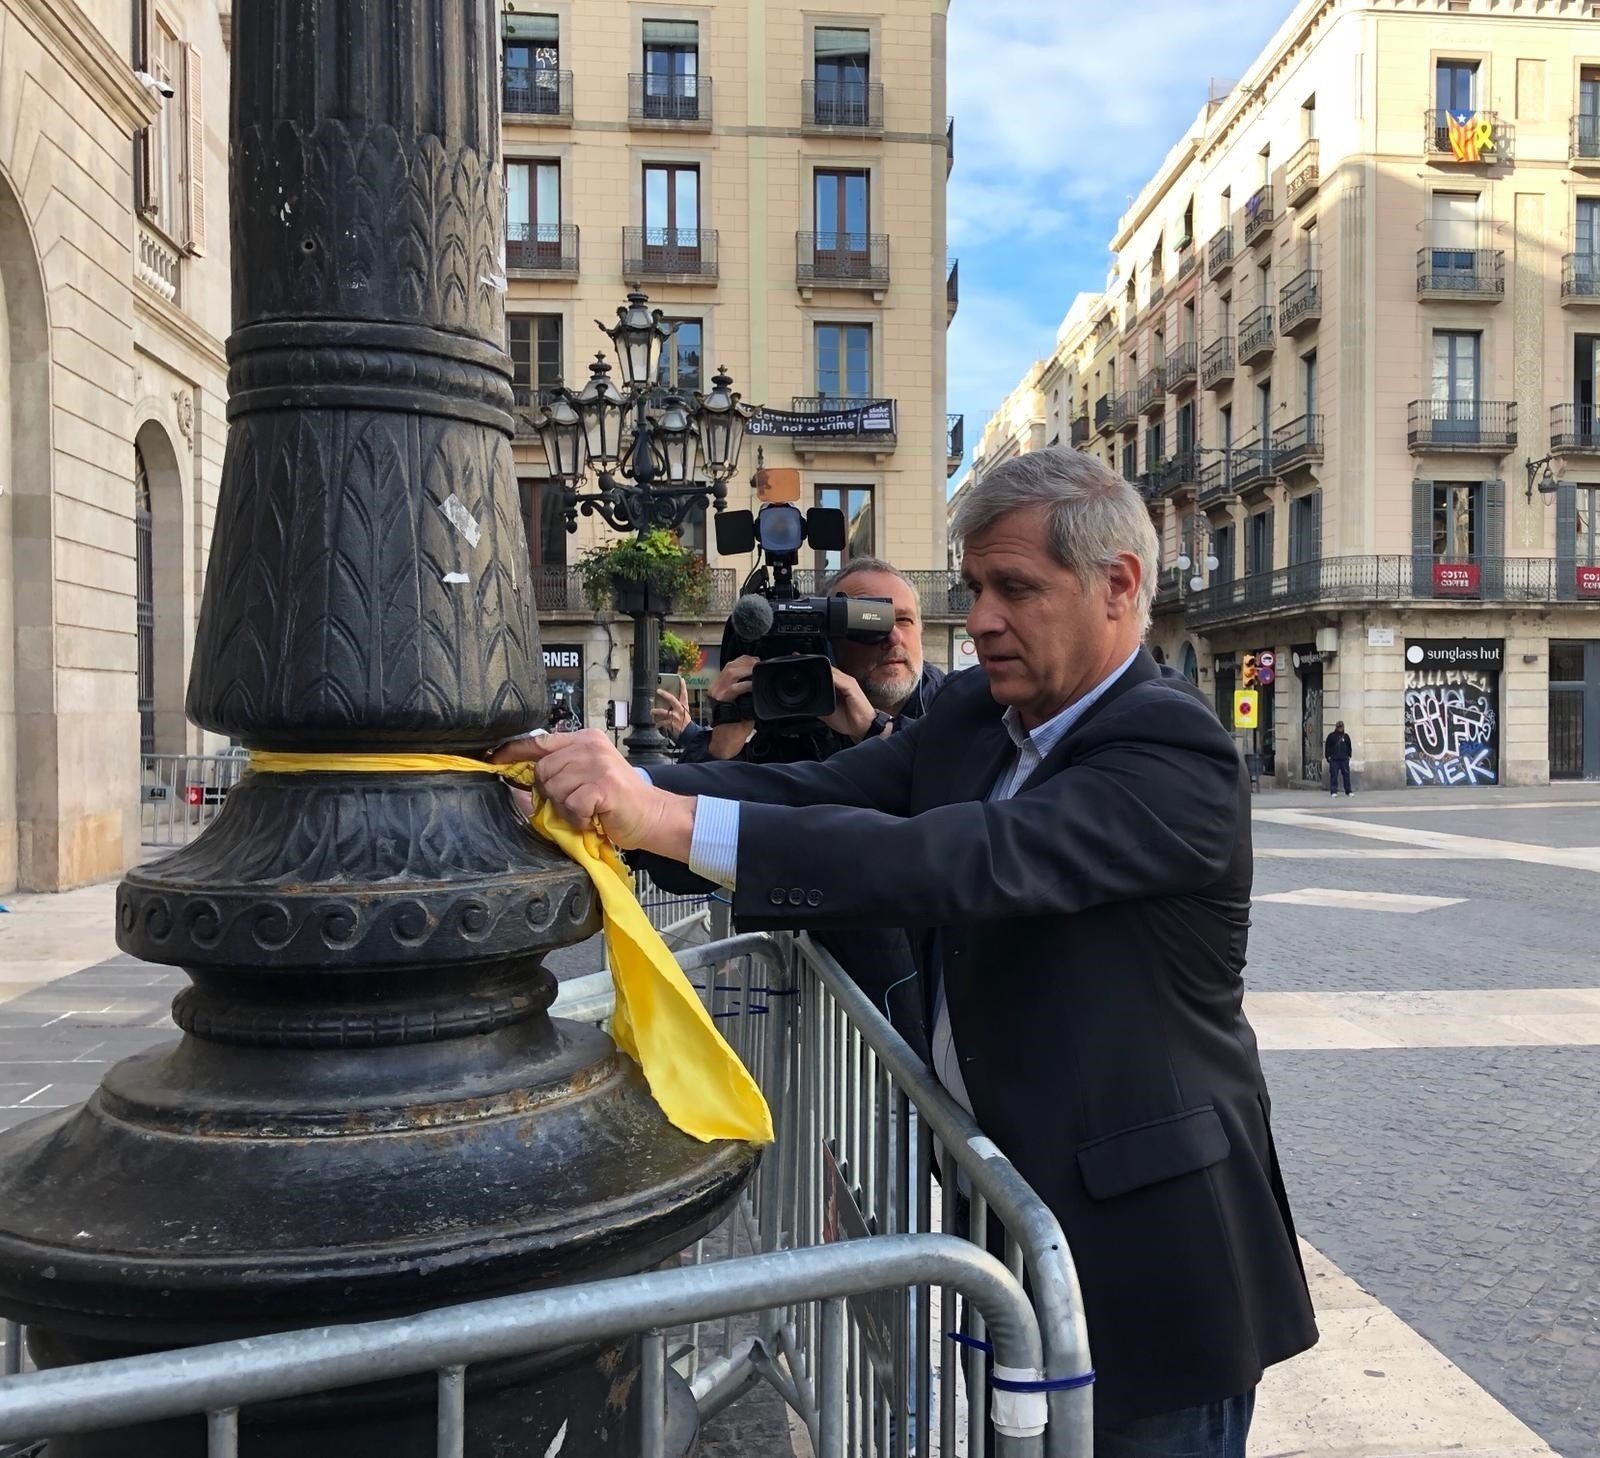 Alberto Fernández quita lazos de farolas en Sant Jaume: "Vuelve a ser de todos"